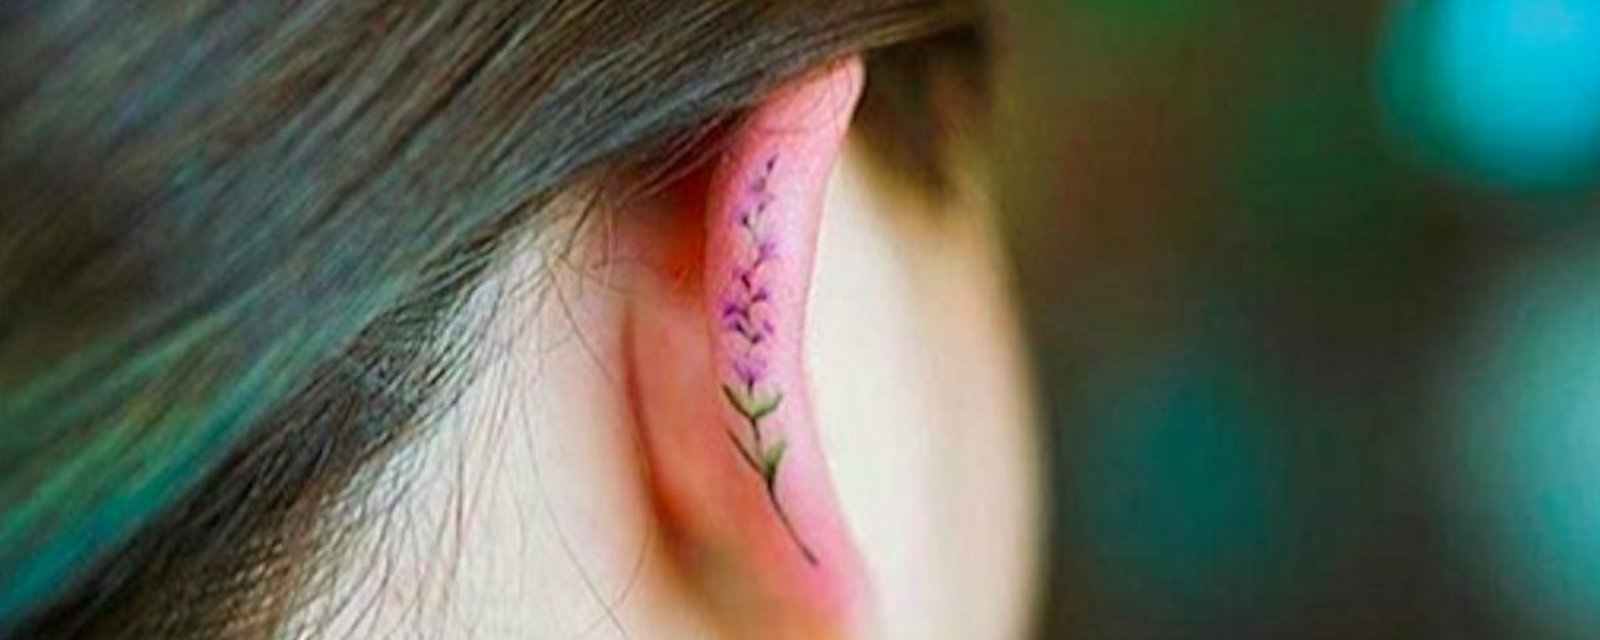 La nouvelle tendance en matière de tatouages cette année: les tattoos d’oreilles!